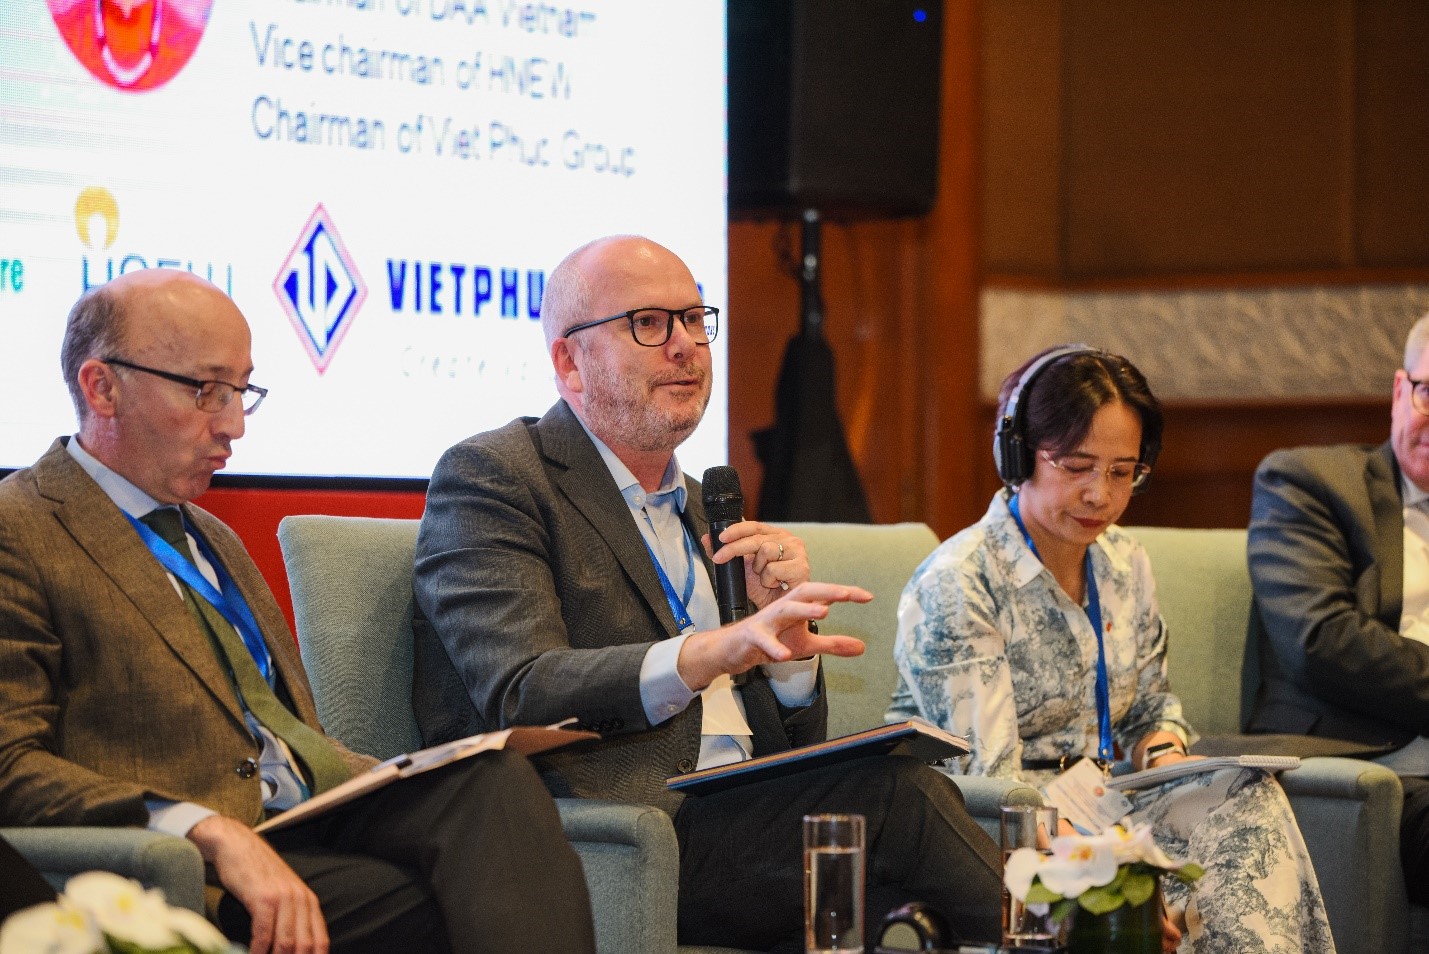 Ông Chris Hogg chia sẻ về nỗ lực của Nestlé hỗ trợ người nông dân ở các nước chuyển đổi sang hệ thống thực phẩm tái sinh, trong đó có Việt Nam. Ảnh: Tùng Đinh.